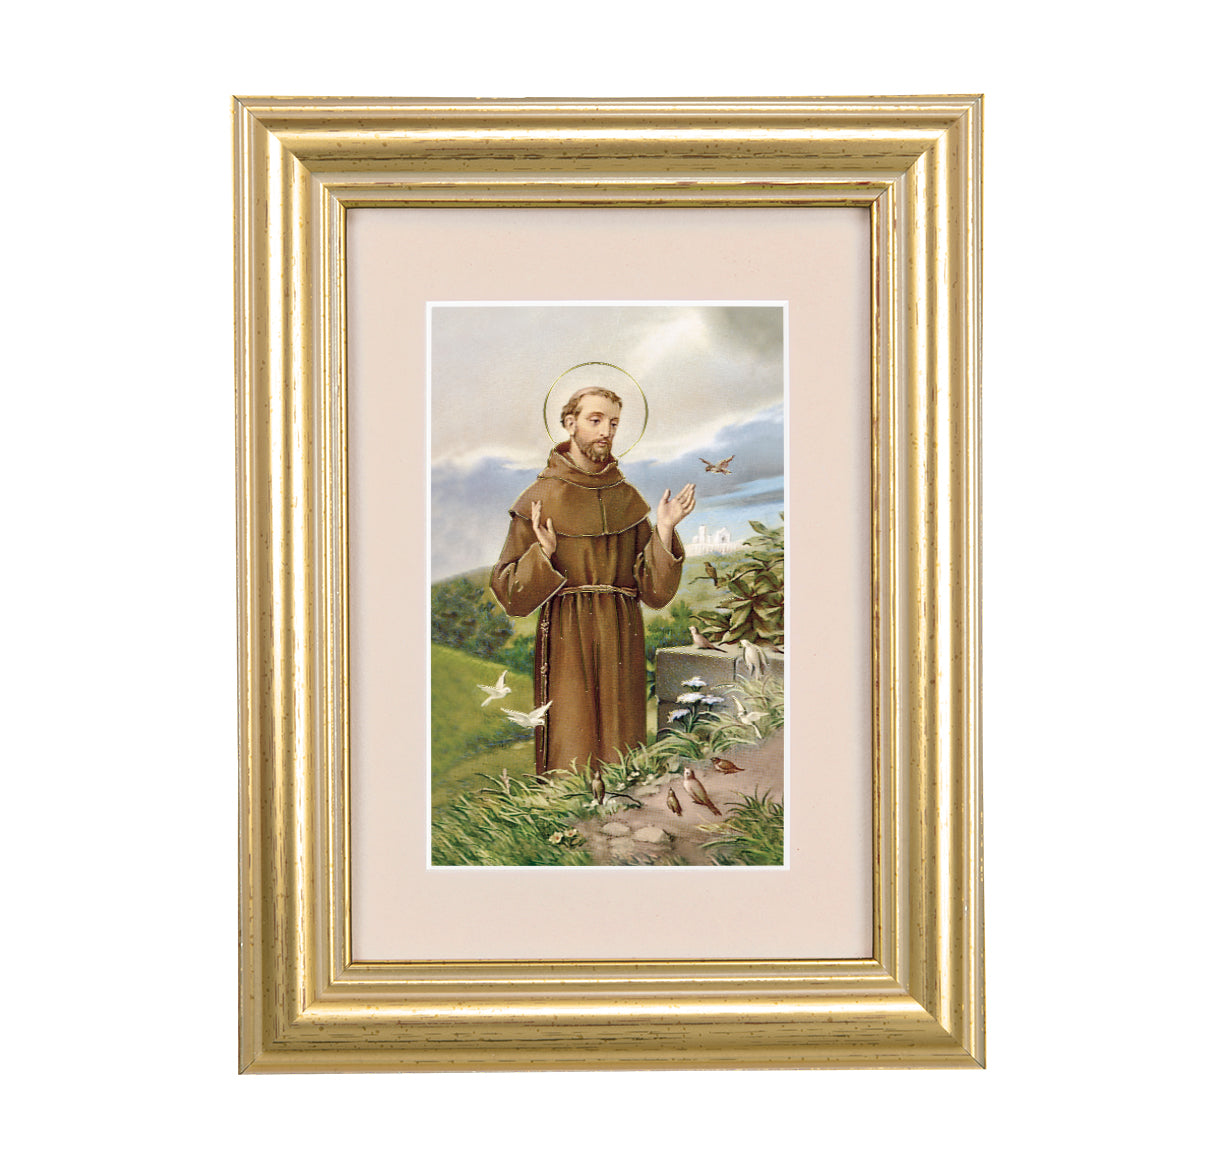 St. Francis Framed Art with Maroon Velvet Matting